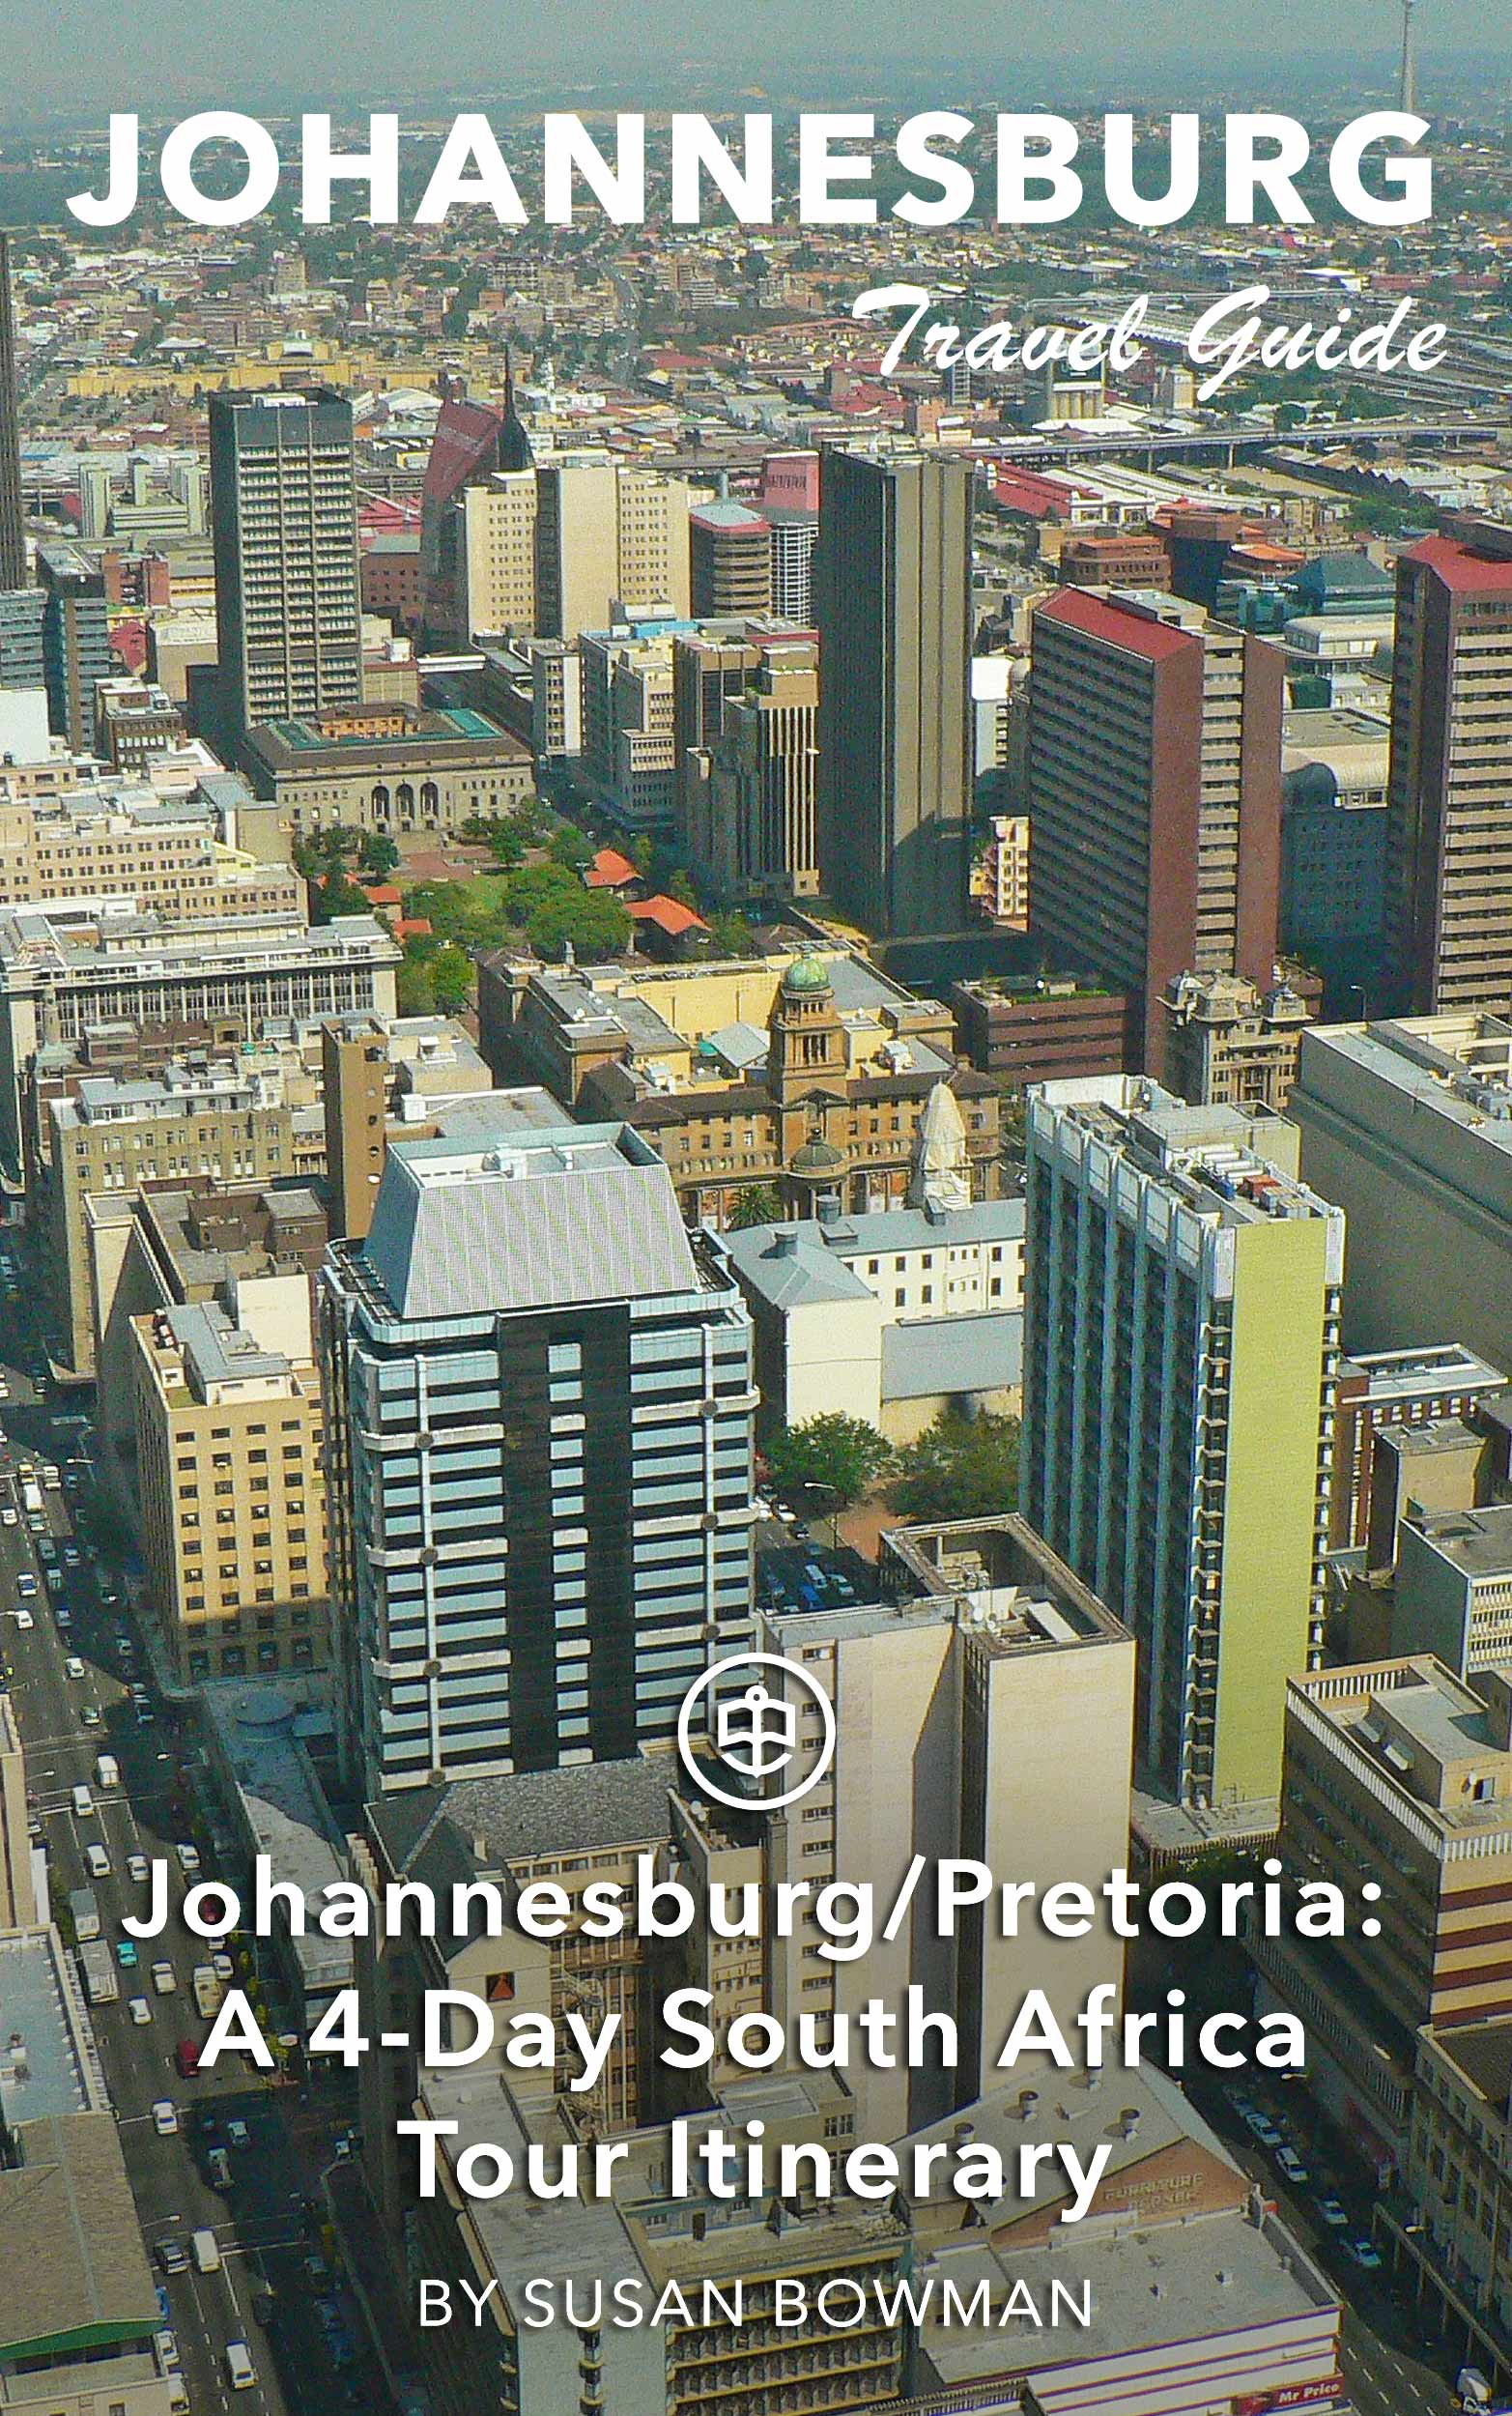 Johannesburg/Pretoria: A 4-Day South Africa Tour Itinerary